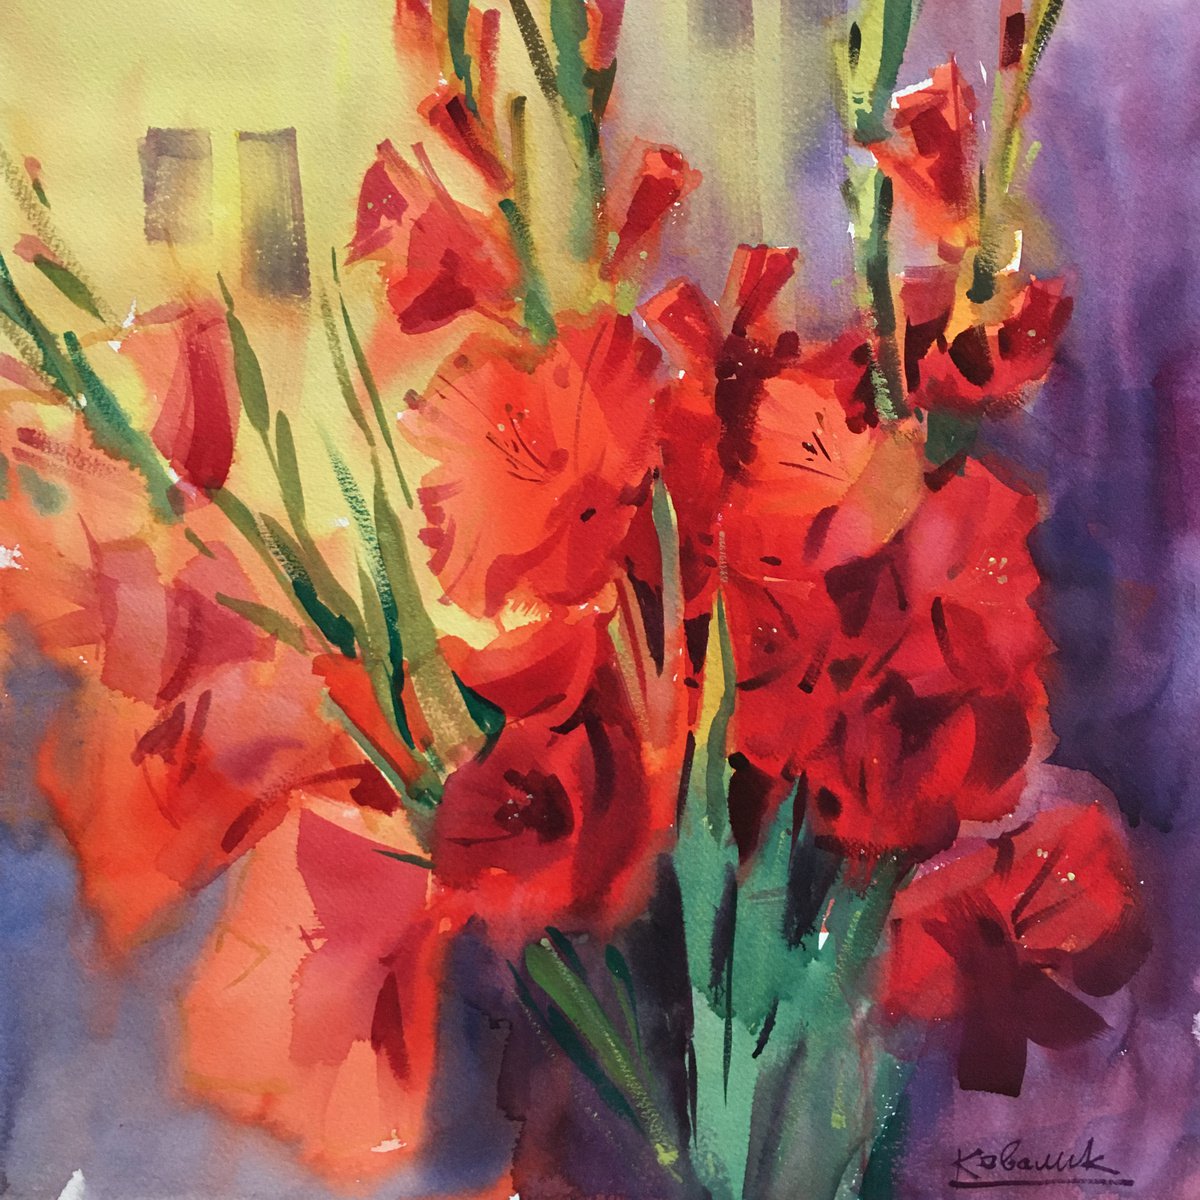 Red gladioli by Andrii Kovalyk